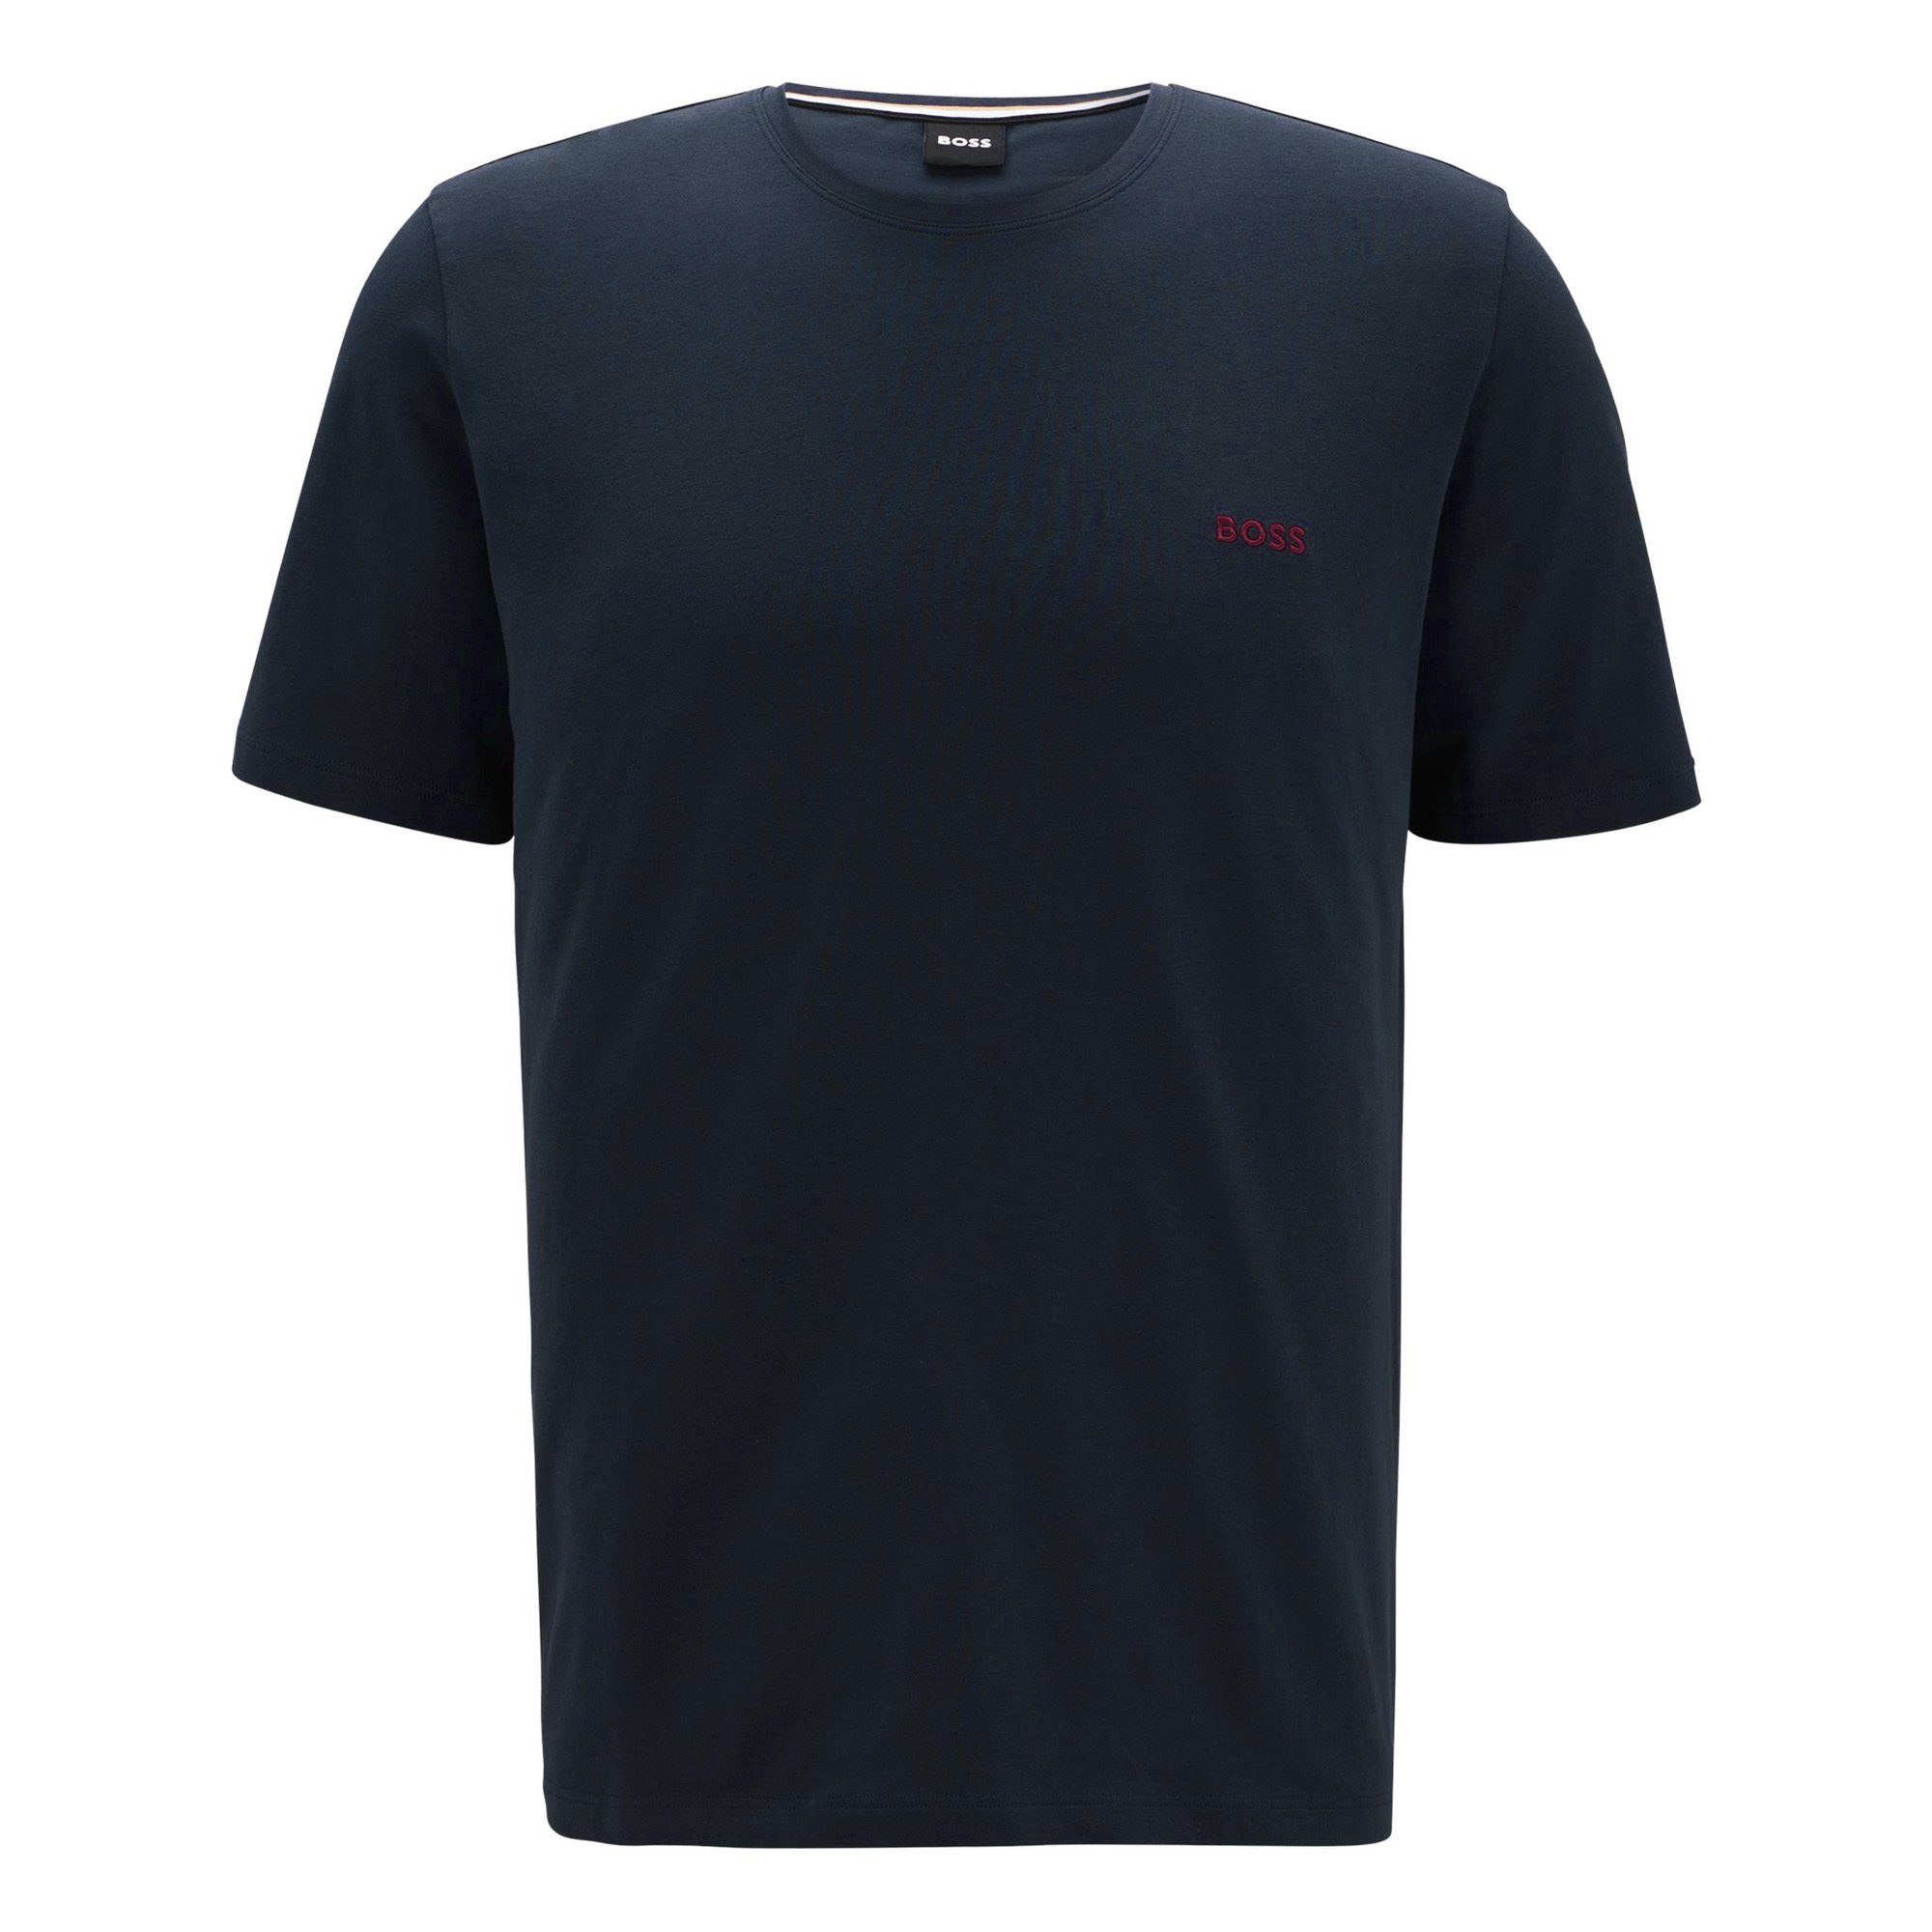 BOSS T-Shirt Herren T-Shirt - Mix & Match, Rundhals, Baumwolle Nachtblau